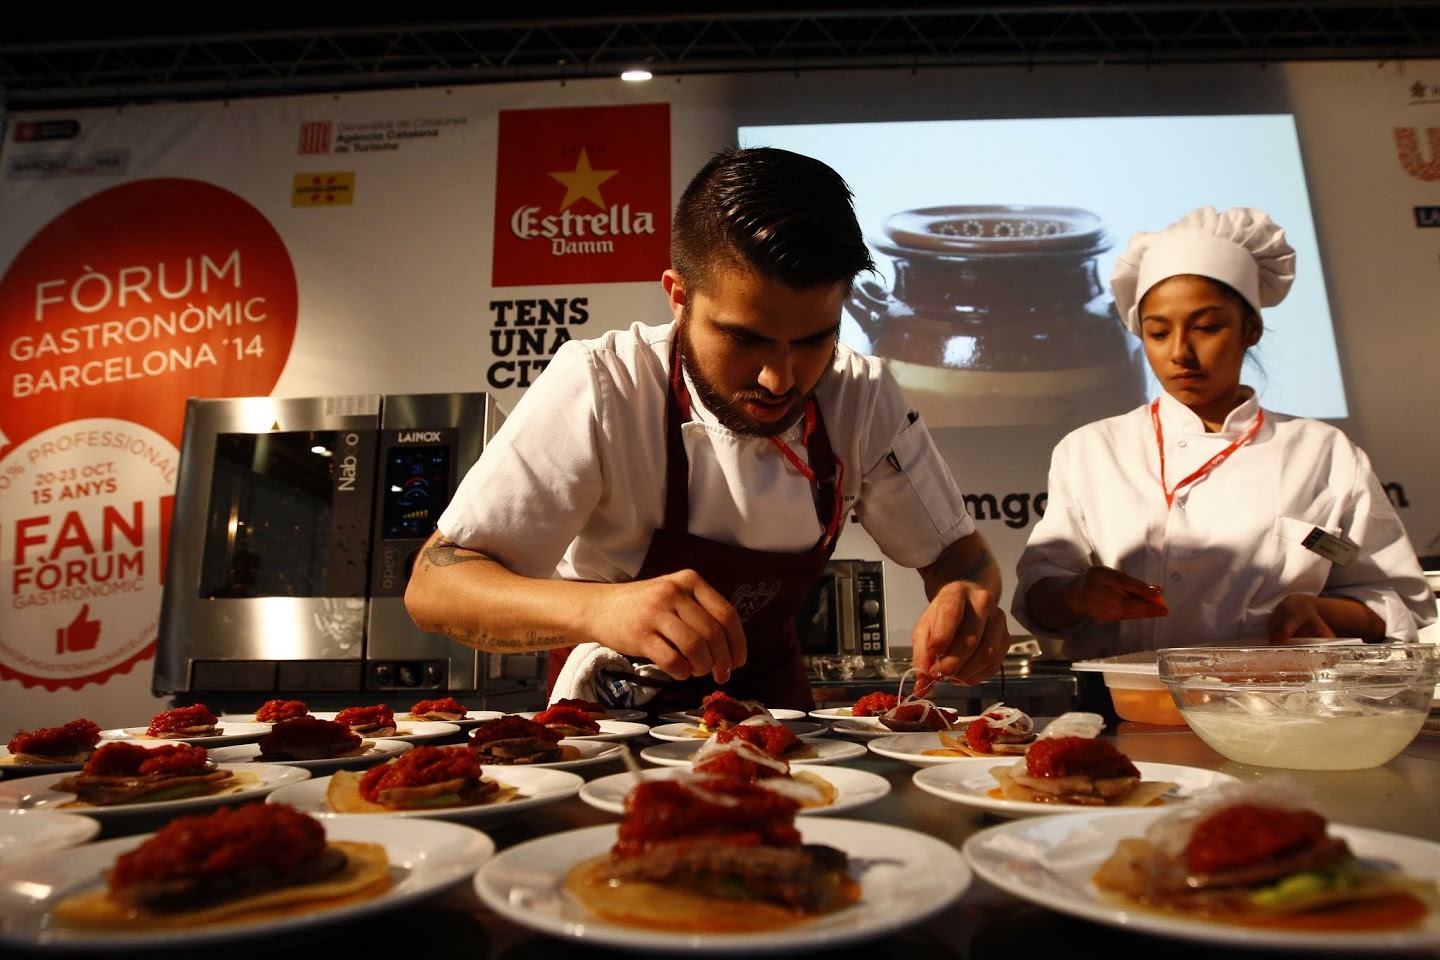 Más de 400 expositores formarán parte del Forum Gastronomic de Barcelona